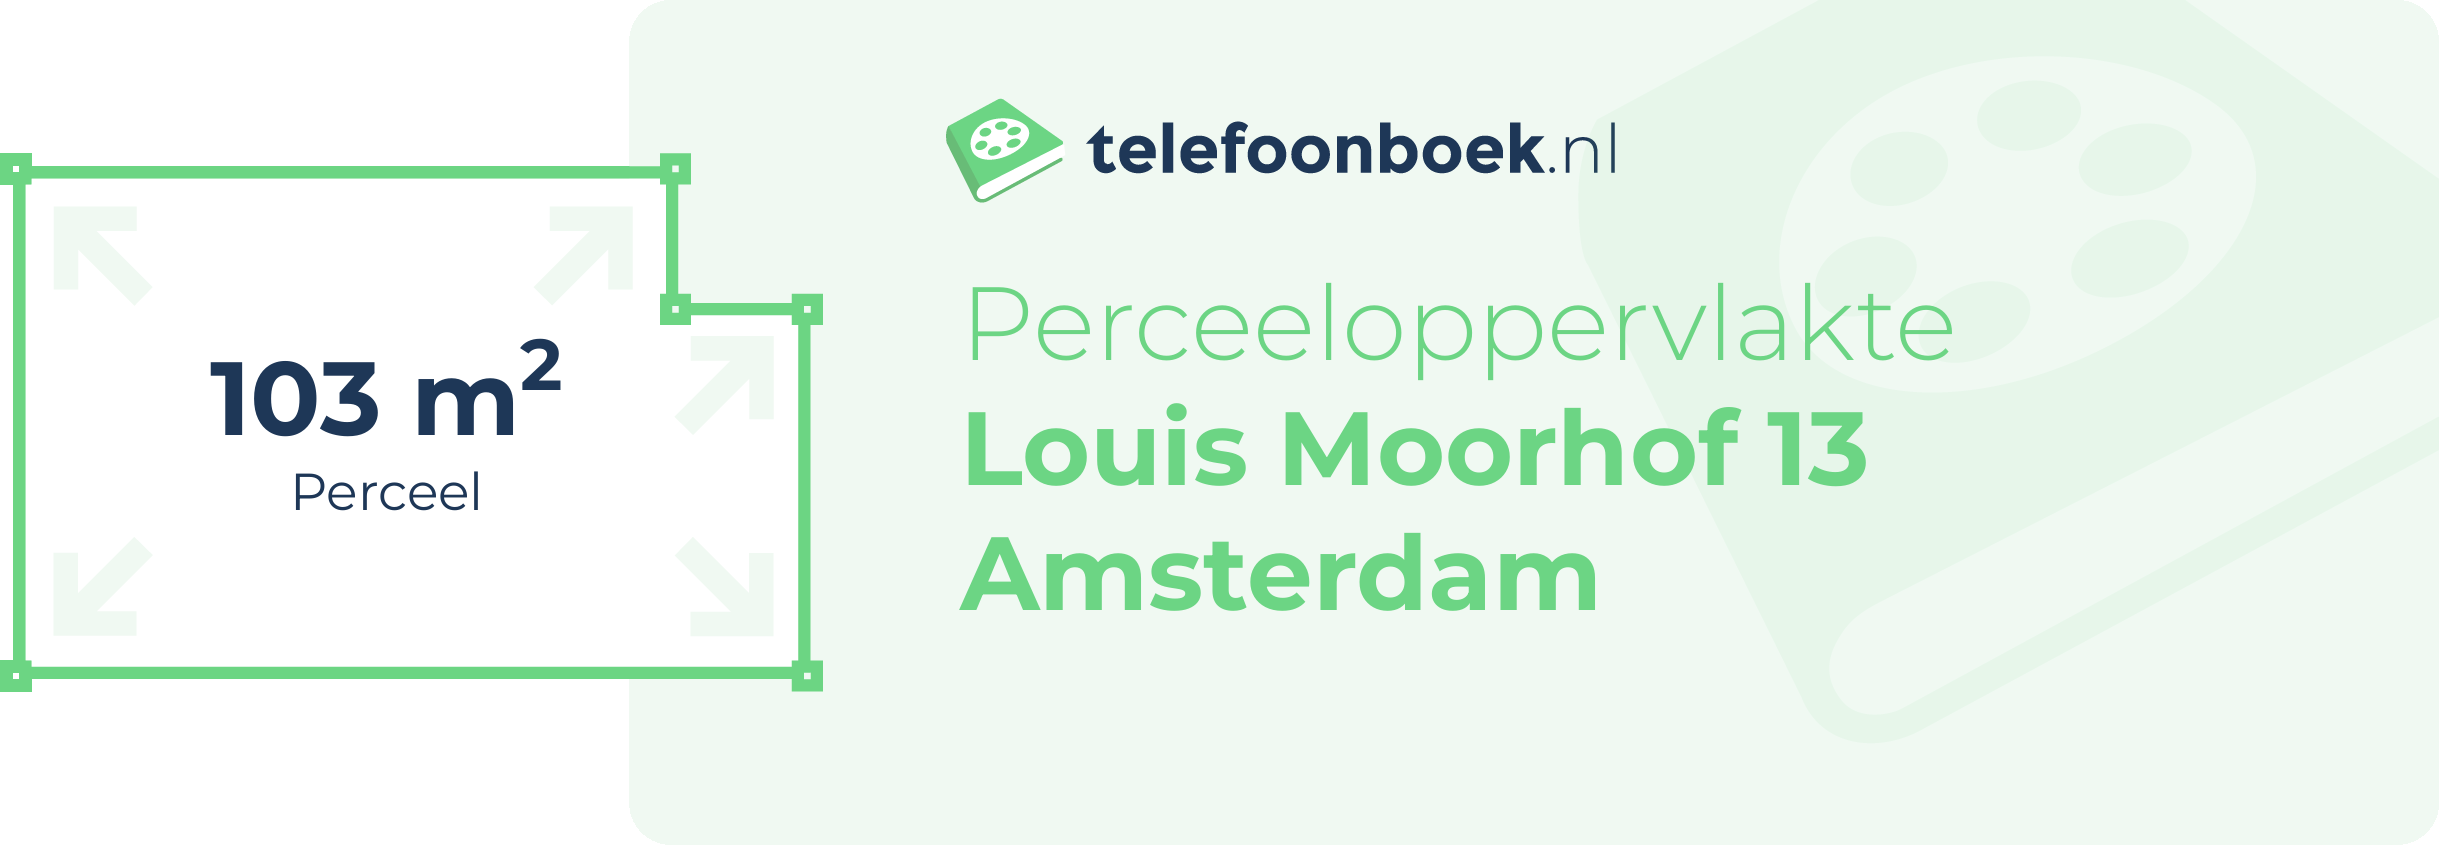 Perceeloppervlakte Louis Moorhof 13 Amsterdam